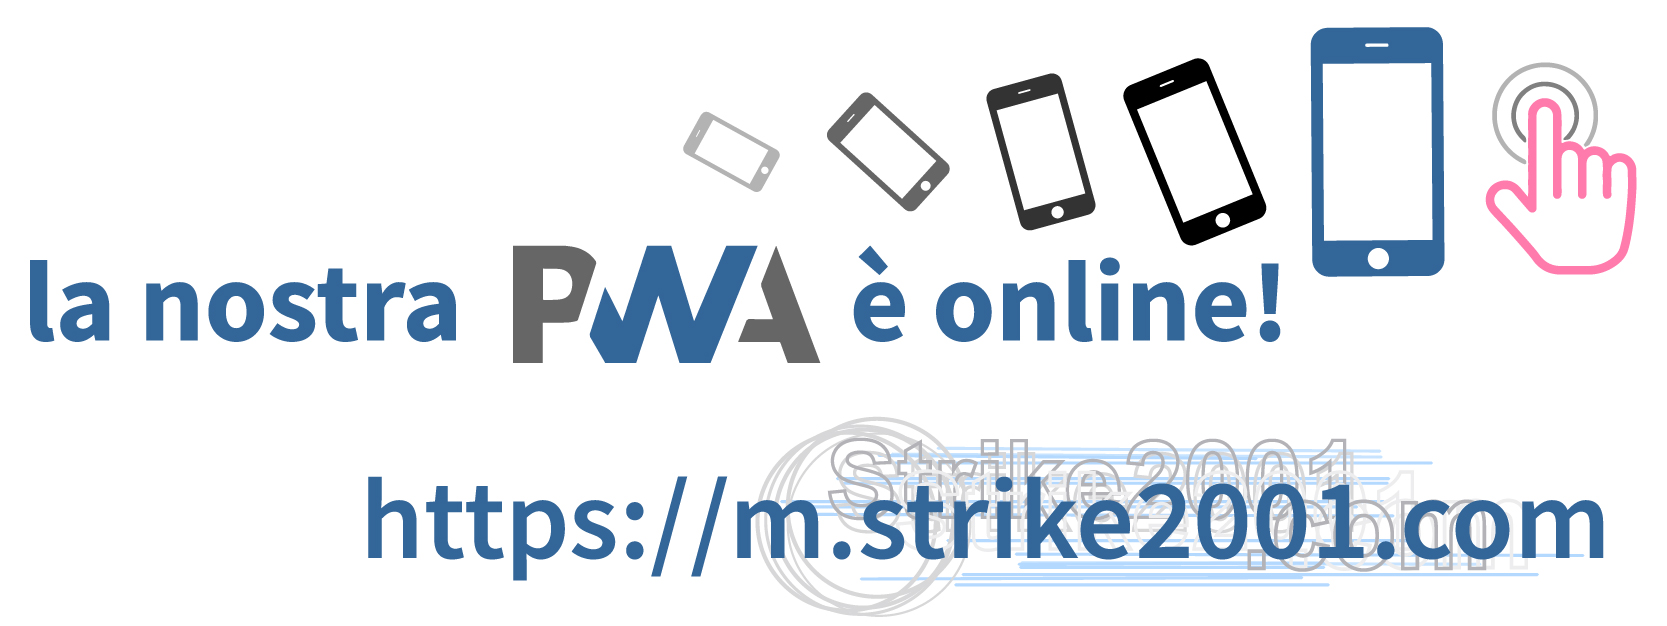 La nostra PWA è adesso online!